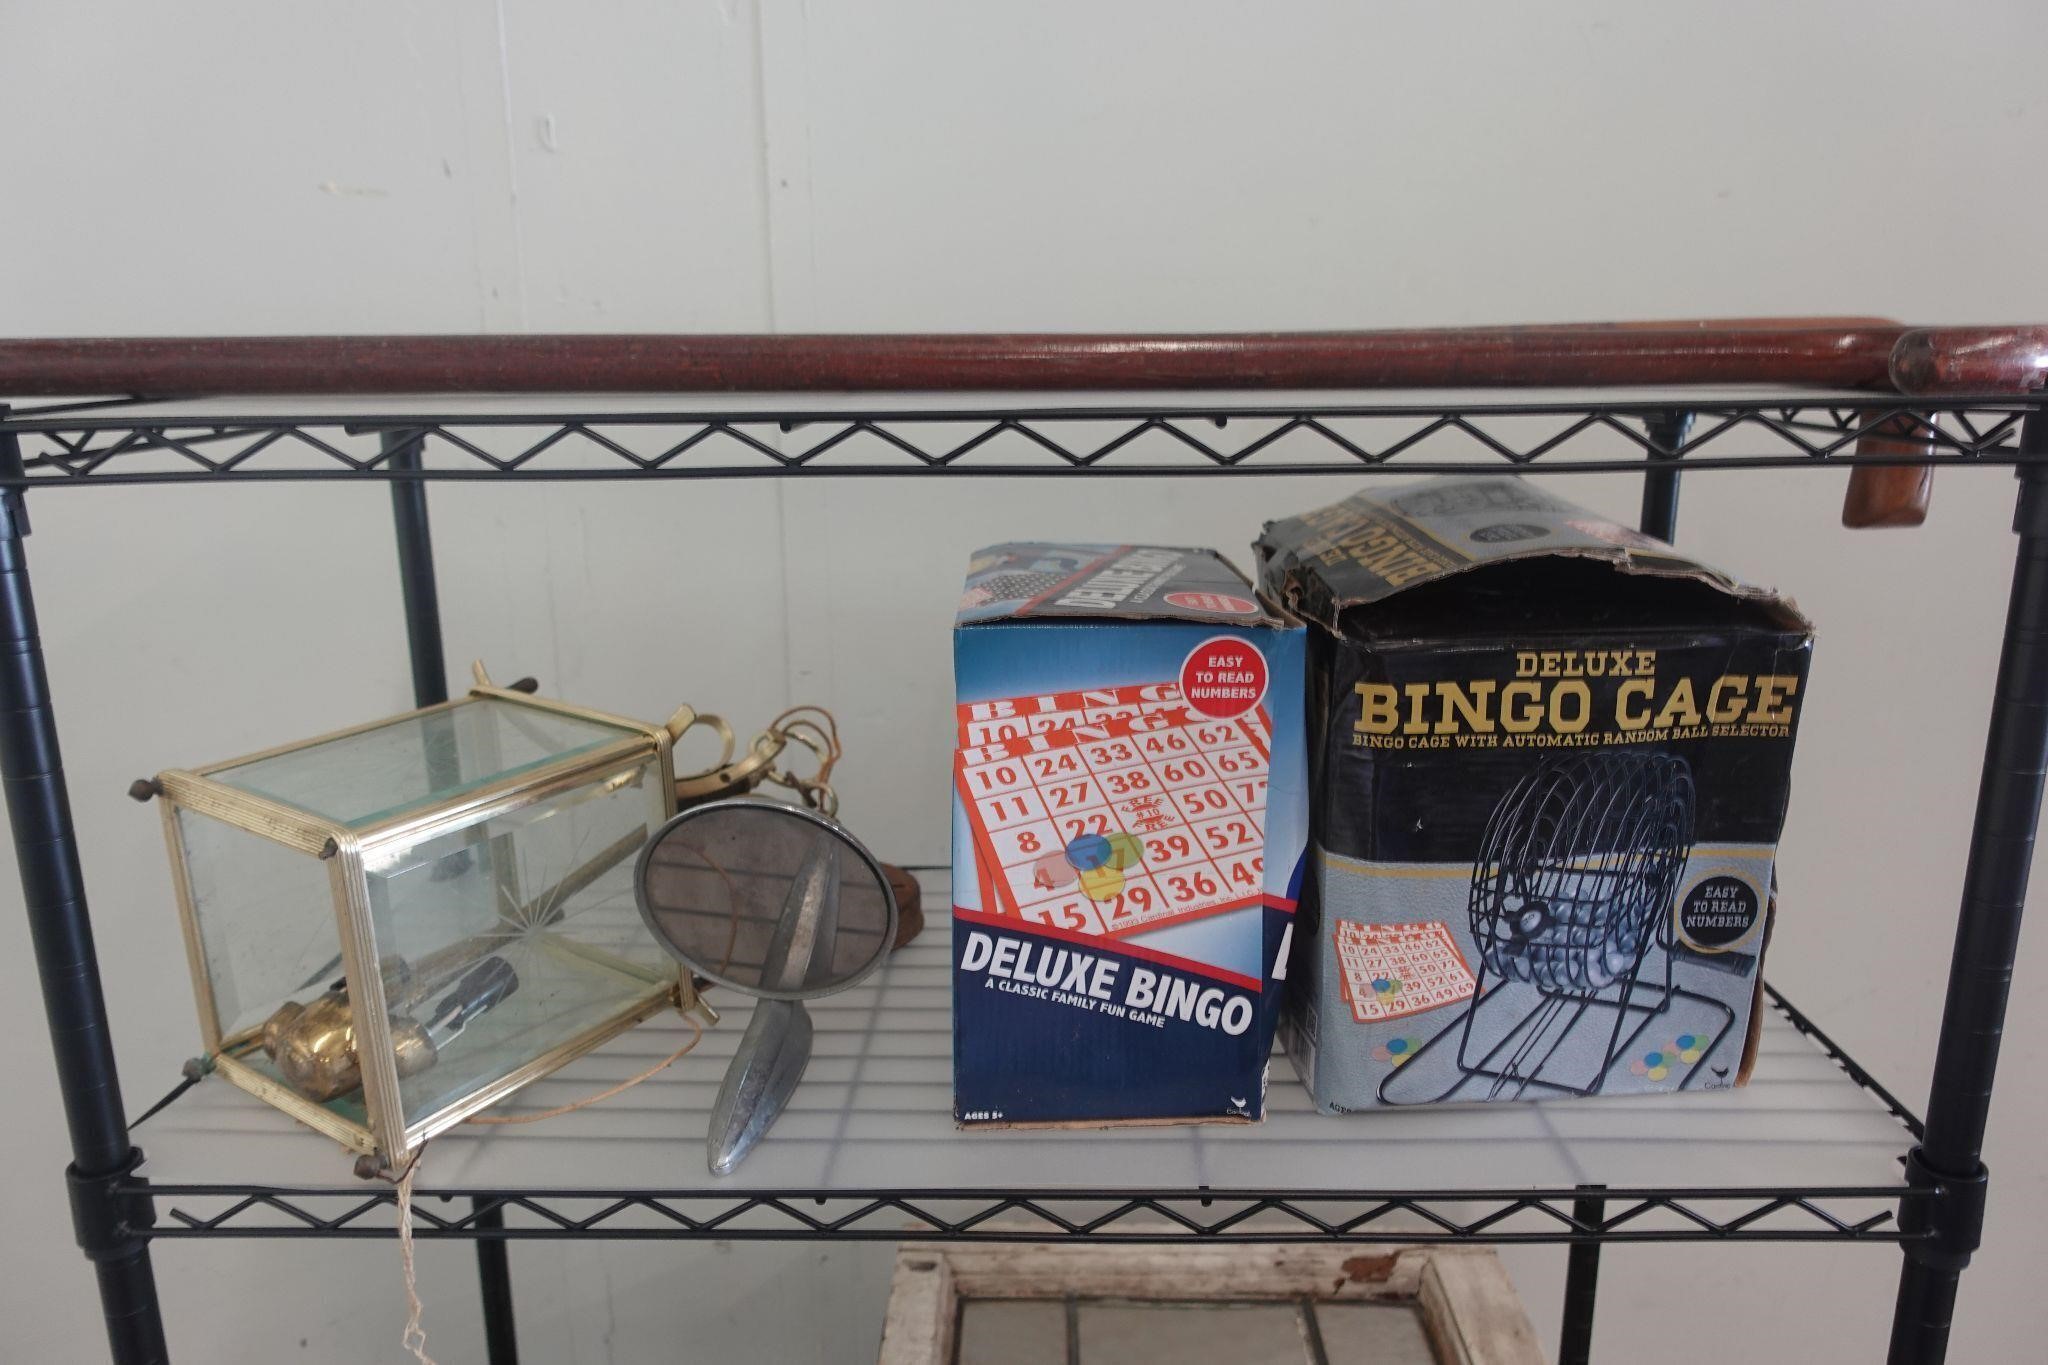 Vintage outdoor light, bingo cage and deluxe bingo